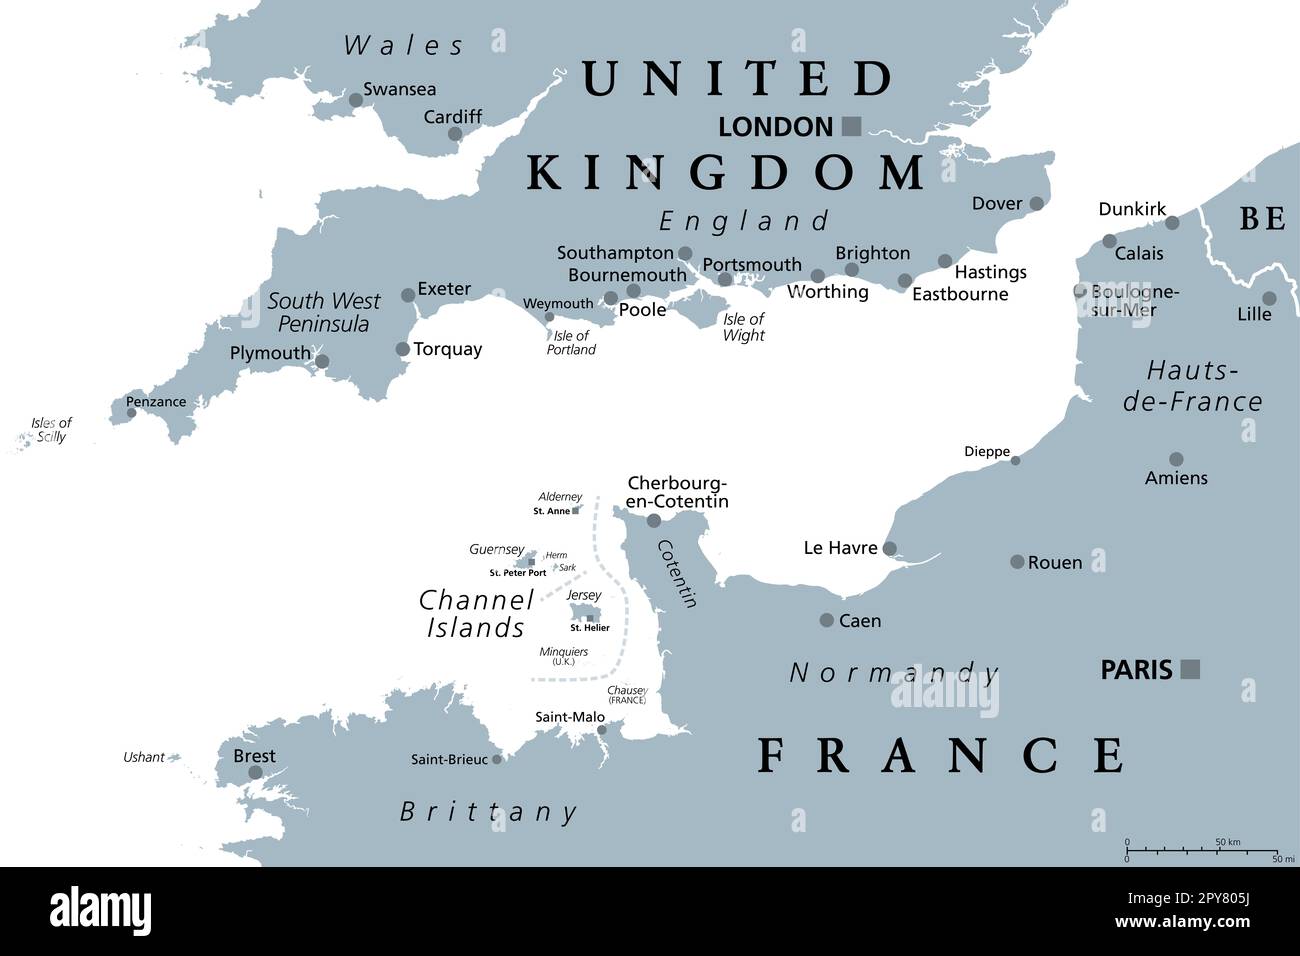 English Channel, mappa politica grigia. British Channel, braccio dell'Oceano Atlantico, separa l'Inghilterra dalla Francia. L'area di spedizione più trafficata del mondo. Foto Stock